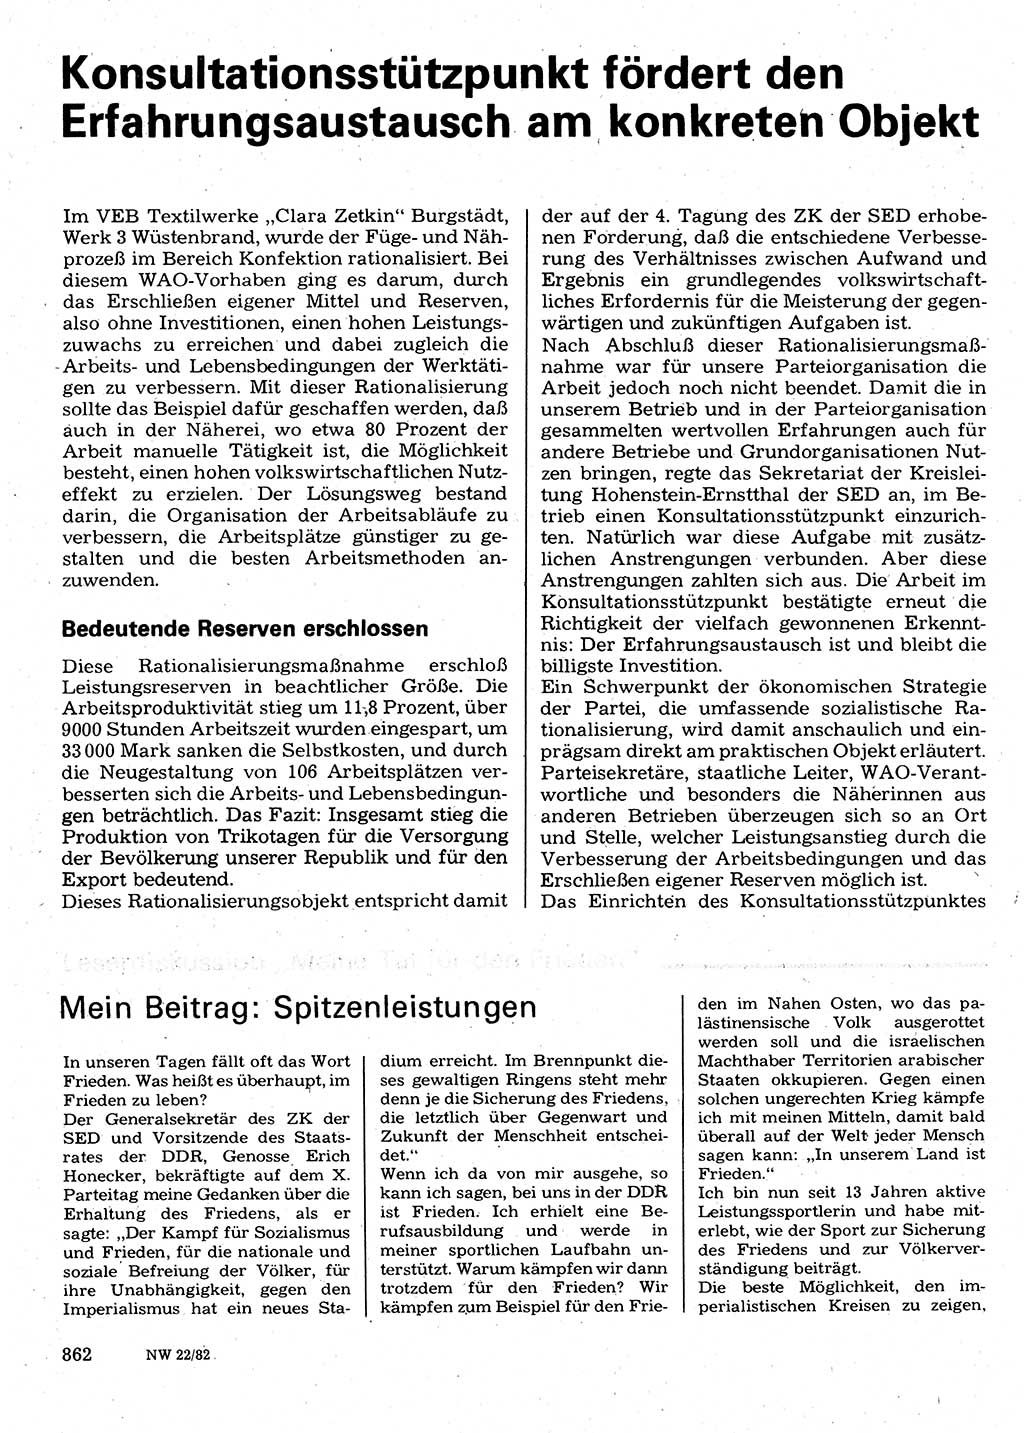 Neuer Weg (NW), Organ des Zentralkomitees (ZK) der SED (Sozialistische Einheitspartei Deutschlands) für Fragen des Parteilebens, 37. Jahrgang [Deutsche Demokratische Republik (DDR)] 1982, Seite 862 (NW ZK SED DDR 1982, S. 862)